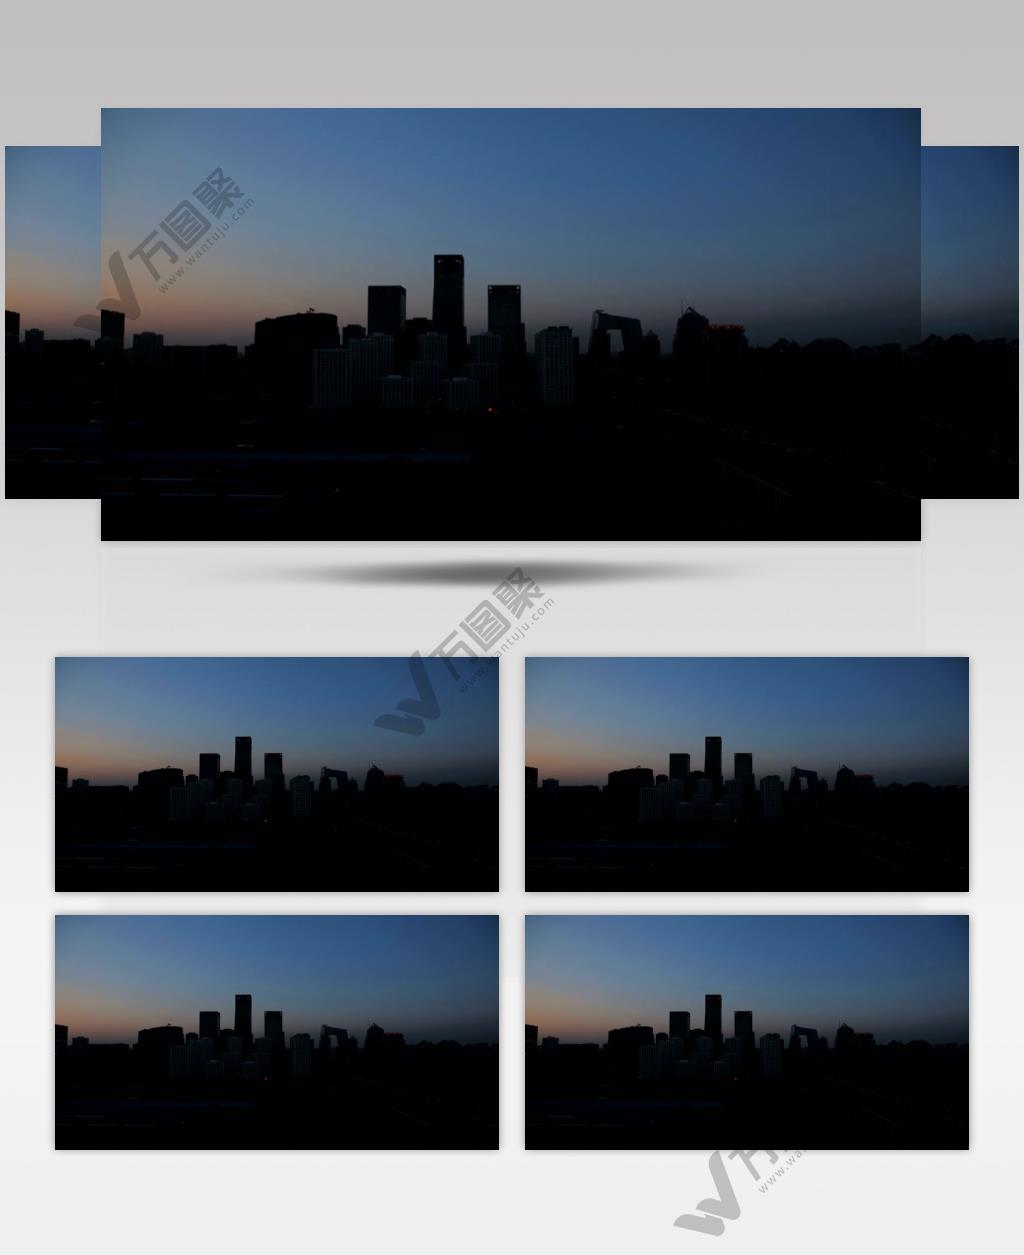 中国上海广州城市地标建筑高端办公楼夜景航拍宣传片高清视频素材城市41